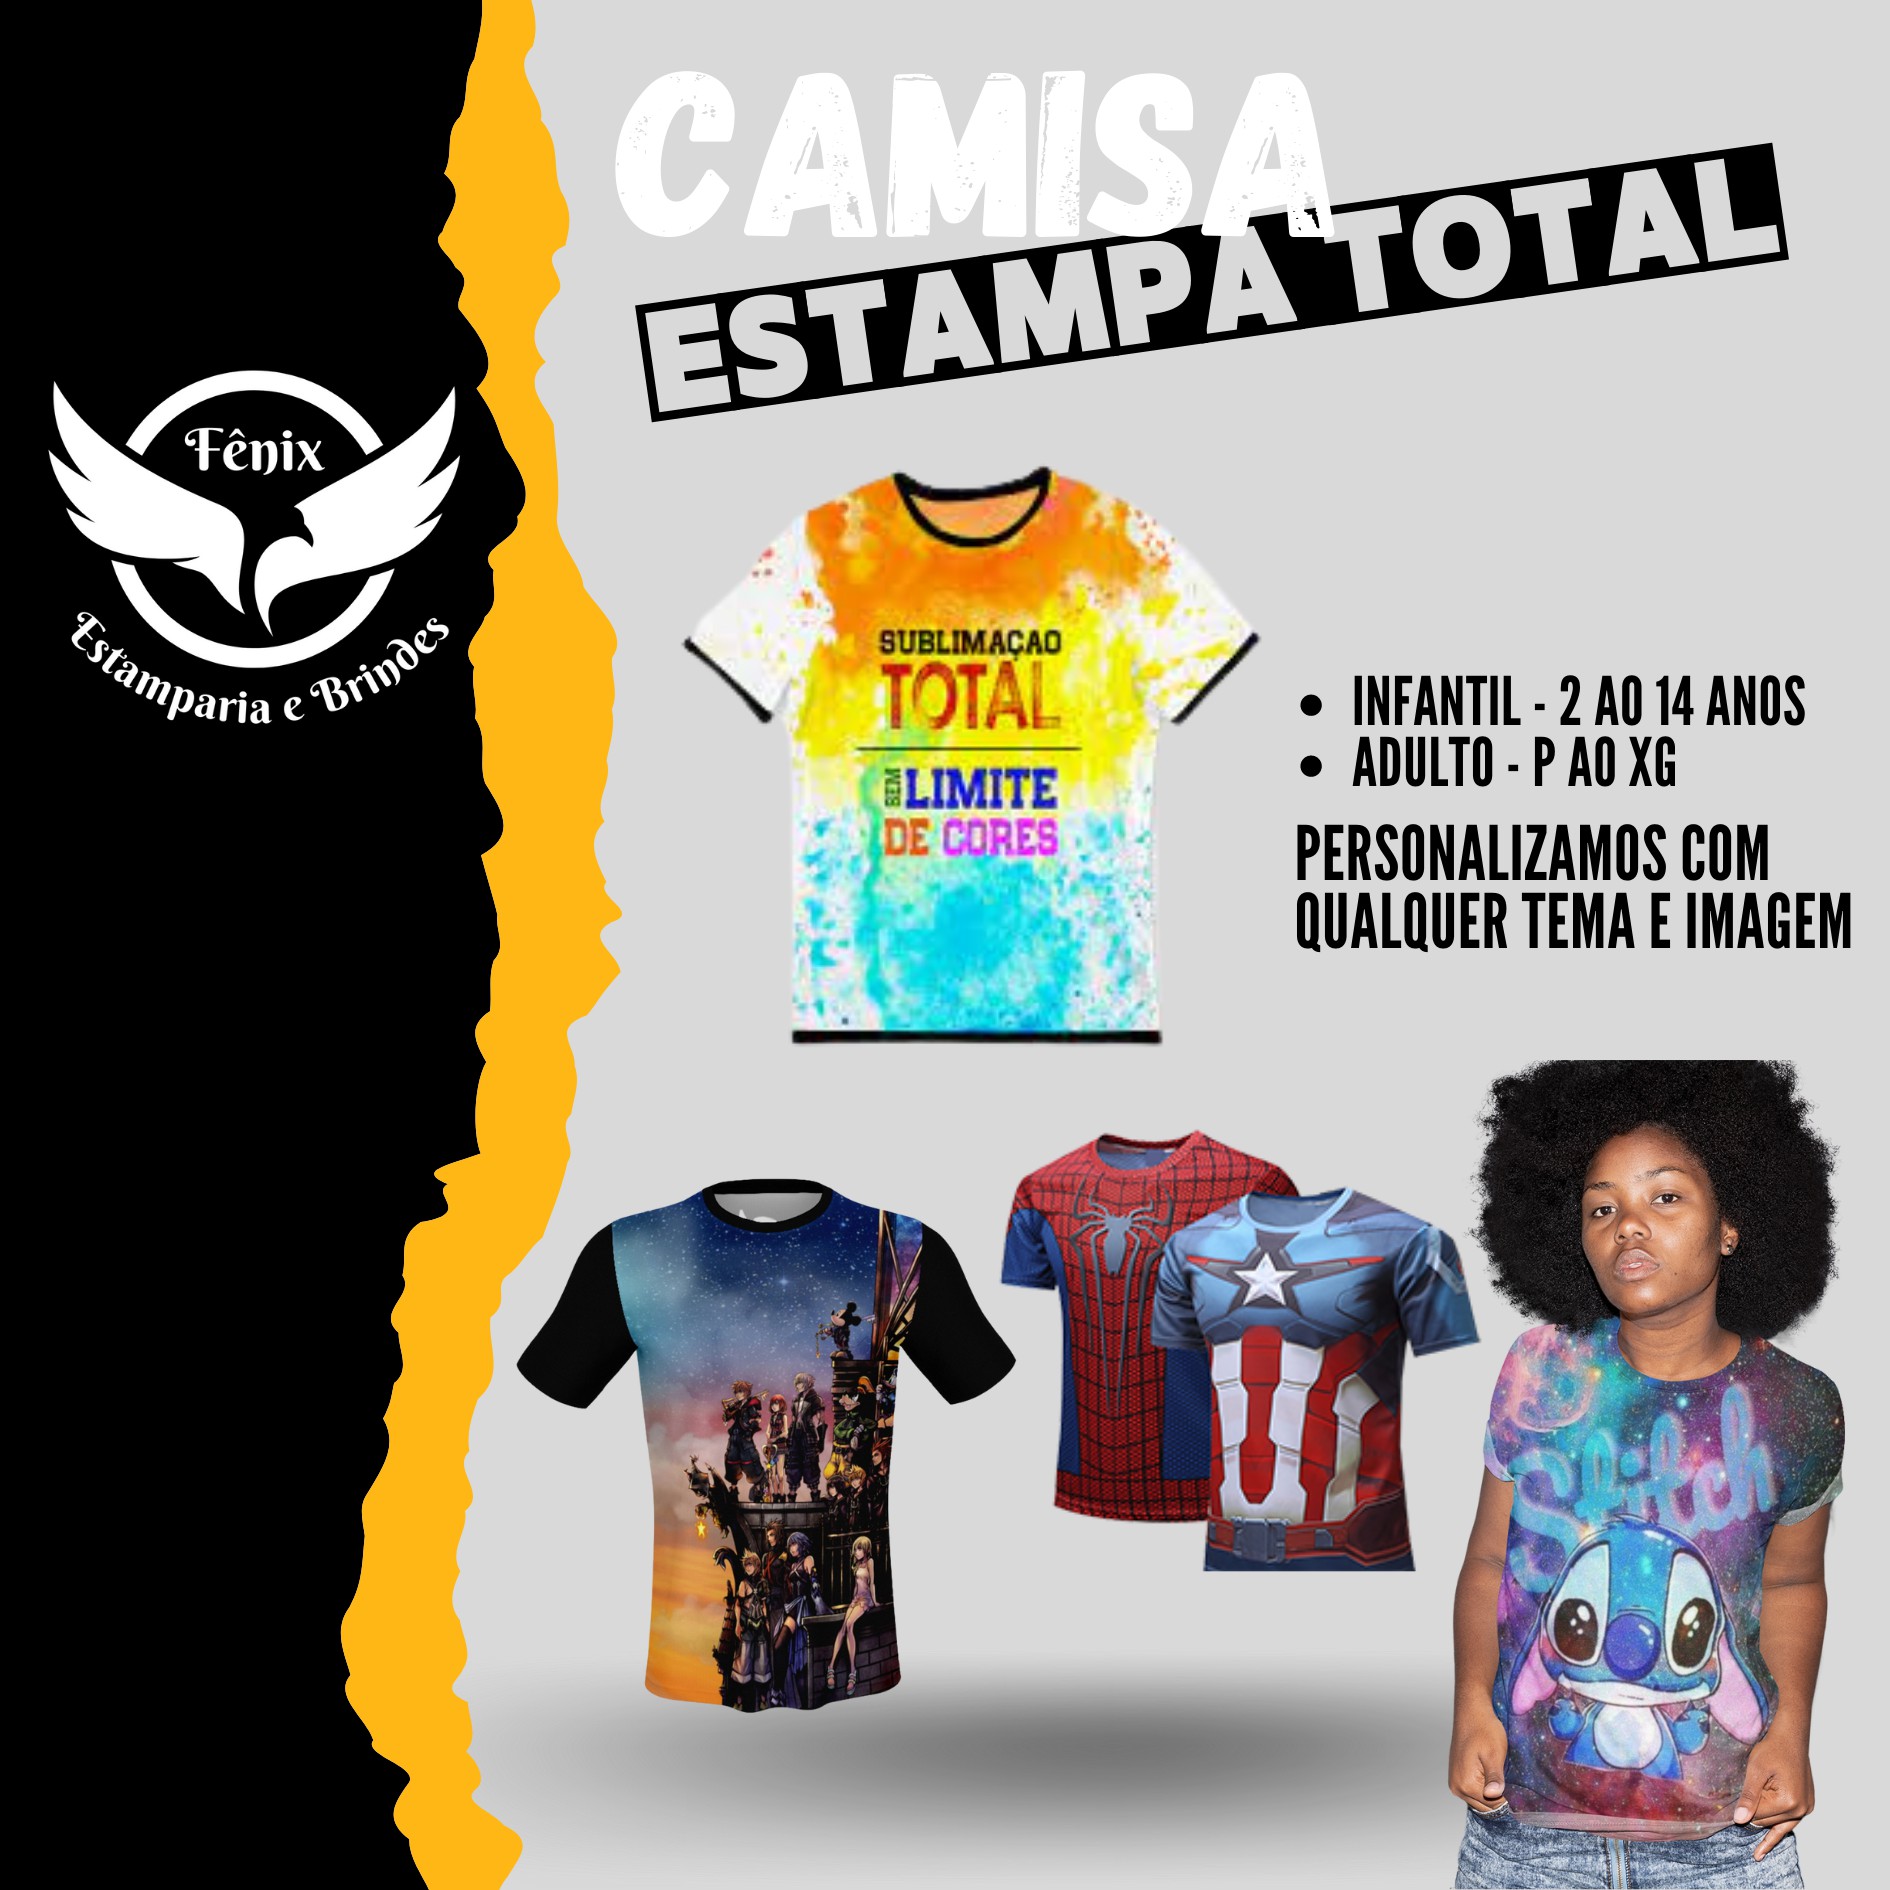 Camisa Personalizada - Estampa TOTAL - Fênix Estamparia e Brindes